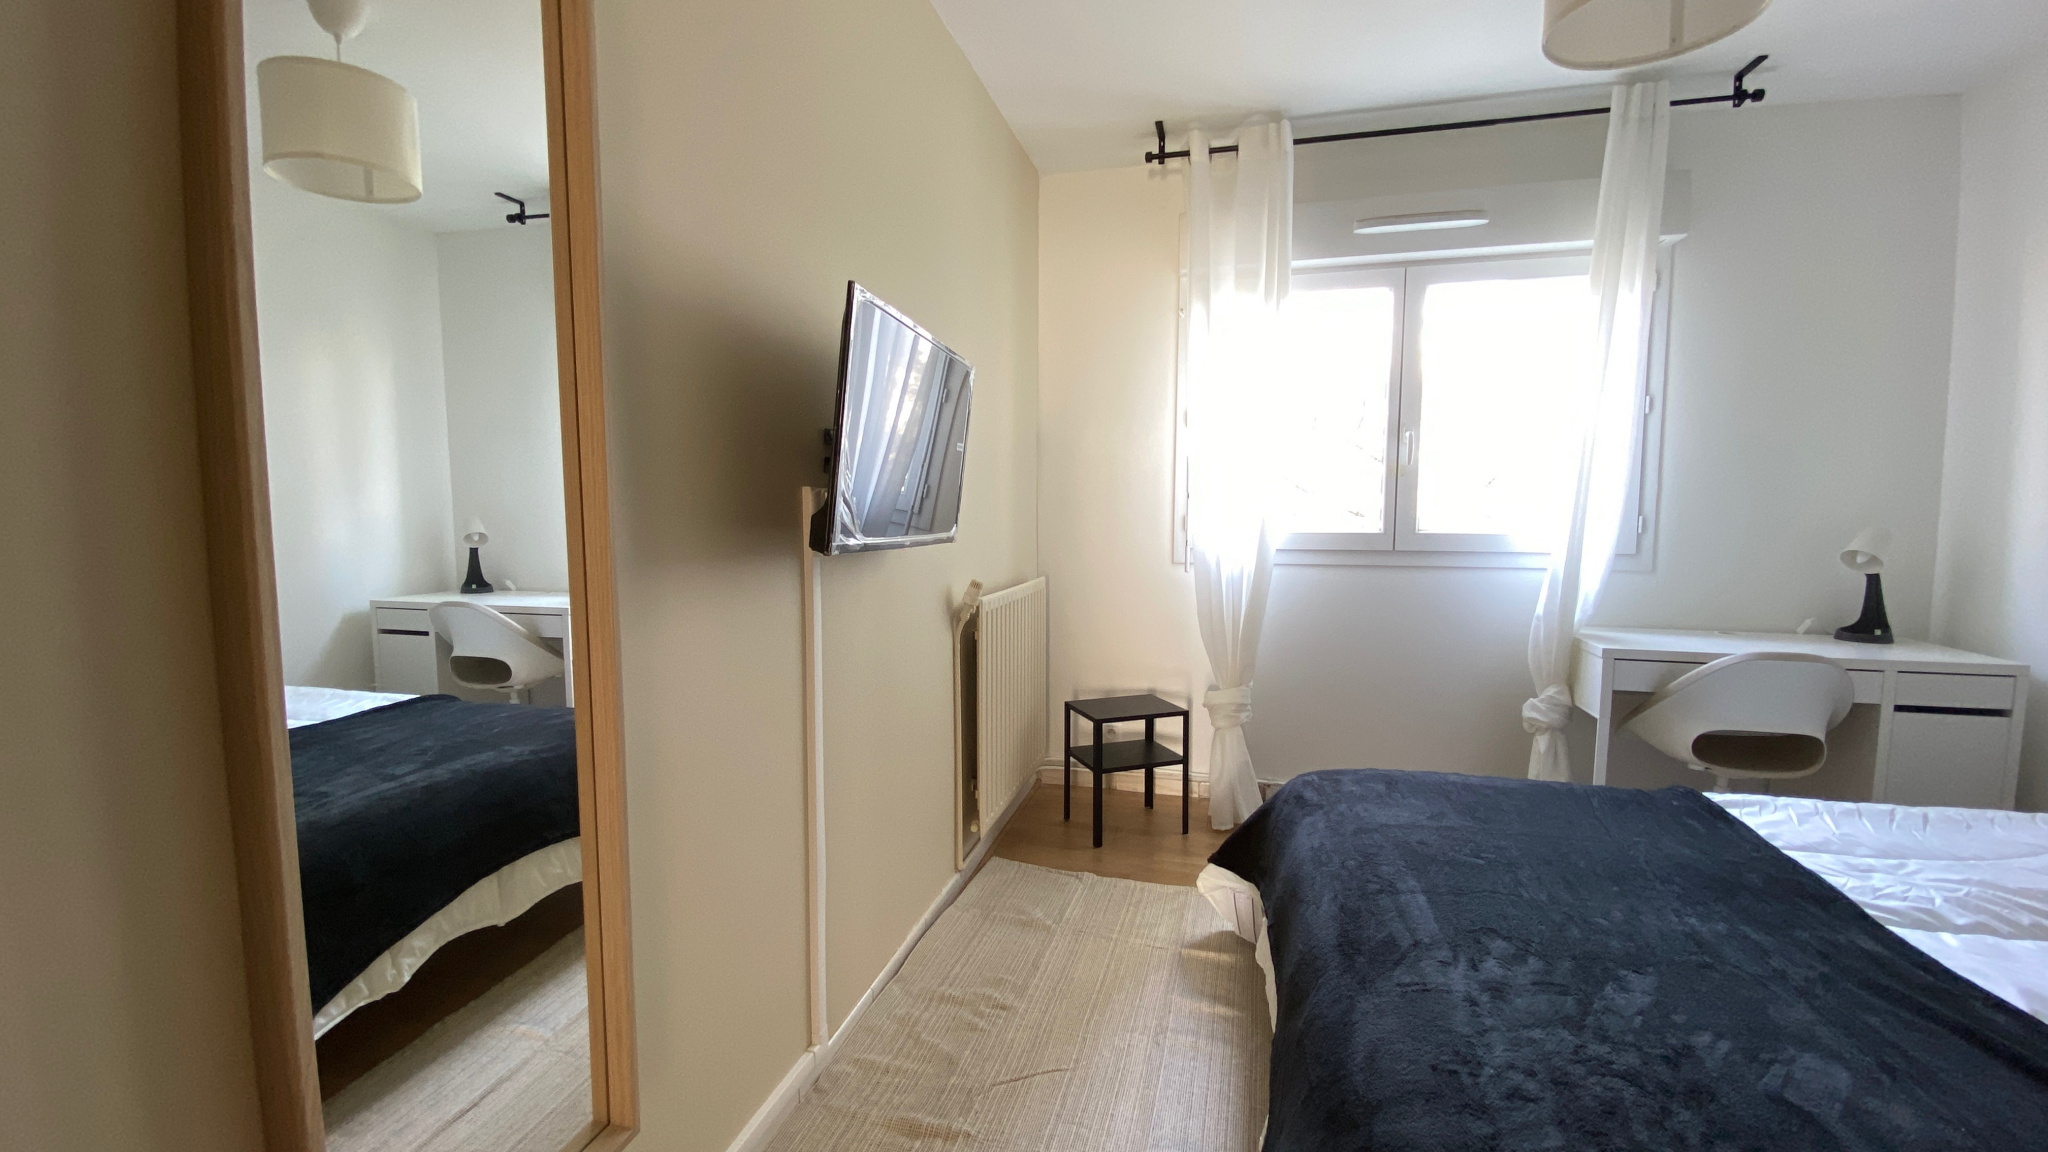 Toulouse,31100,5 Bedrooms Bedrooms,6 Rooms Rooms,1 la Salle de bainBathrooms,Appartement,1007